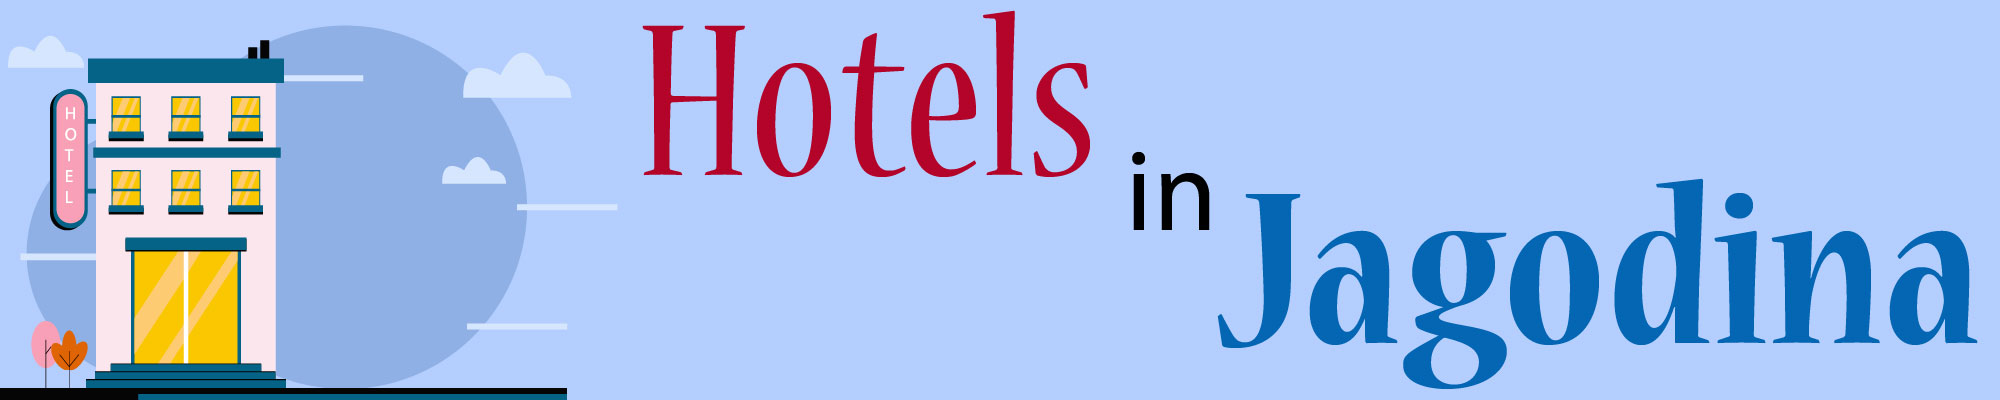 Hotels Apartments Jagodina Serbia Accommodation Rooms